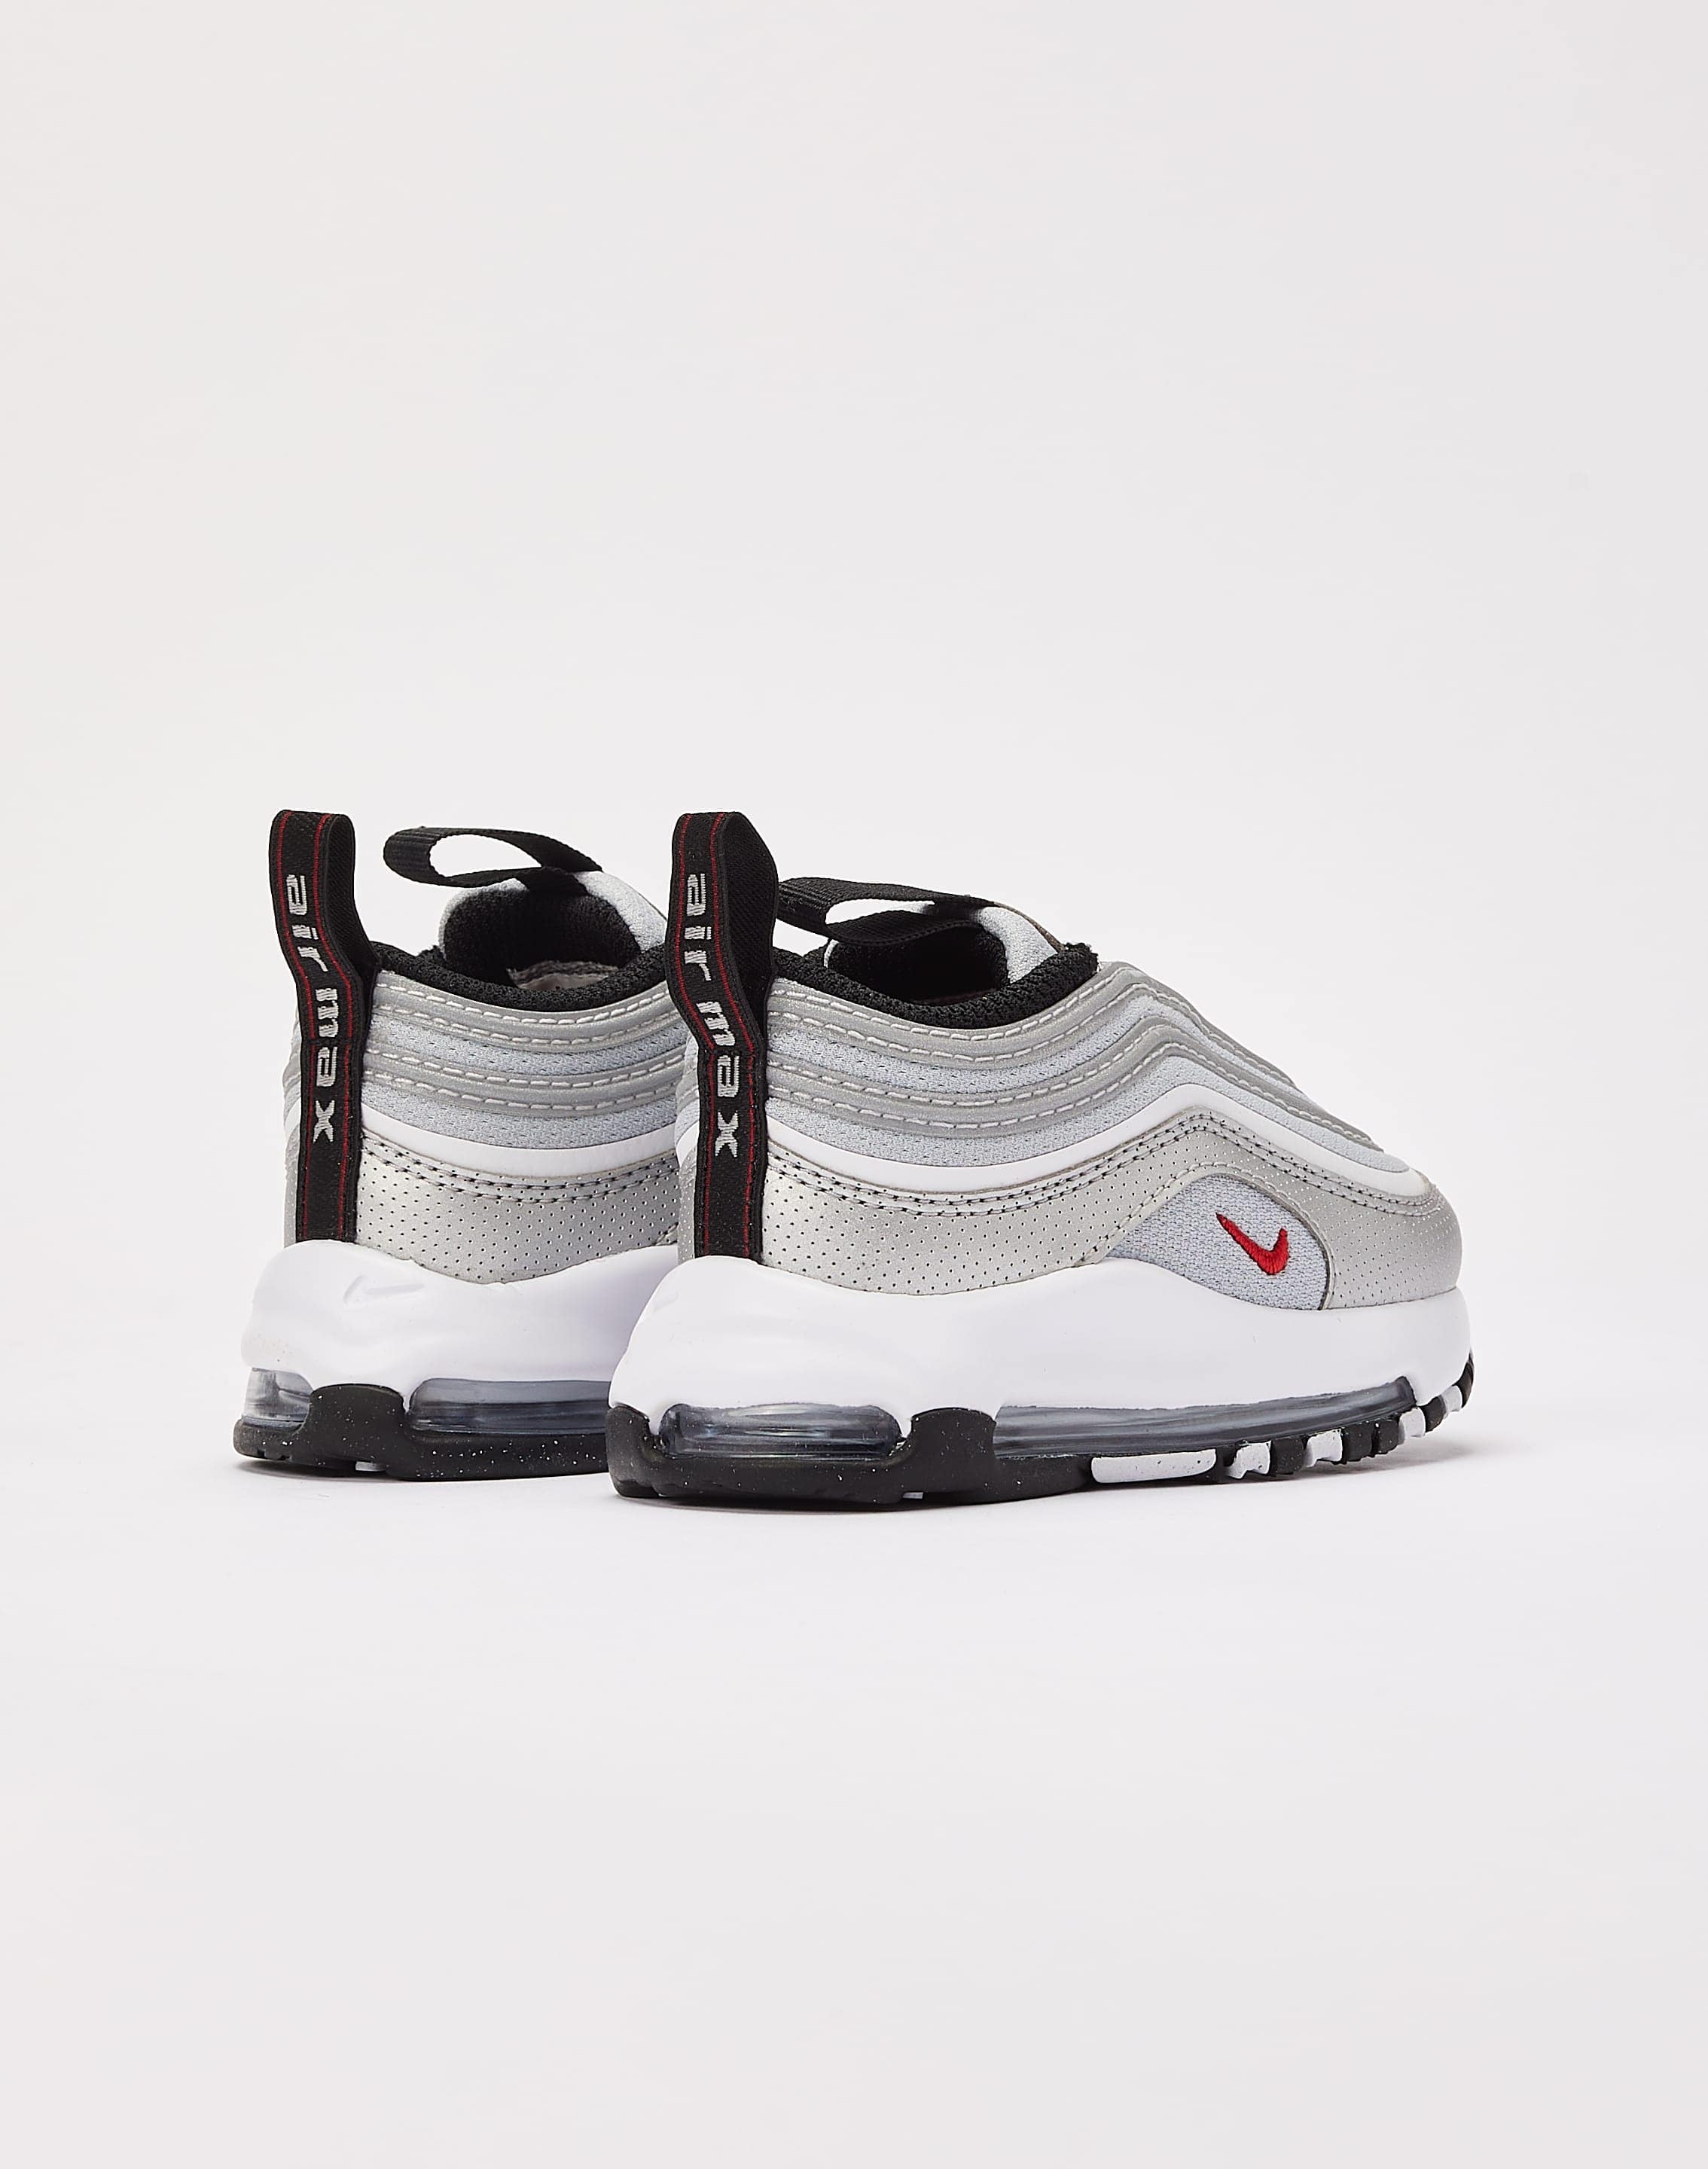 Nike Air Max 97 White Silver